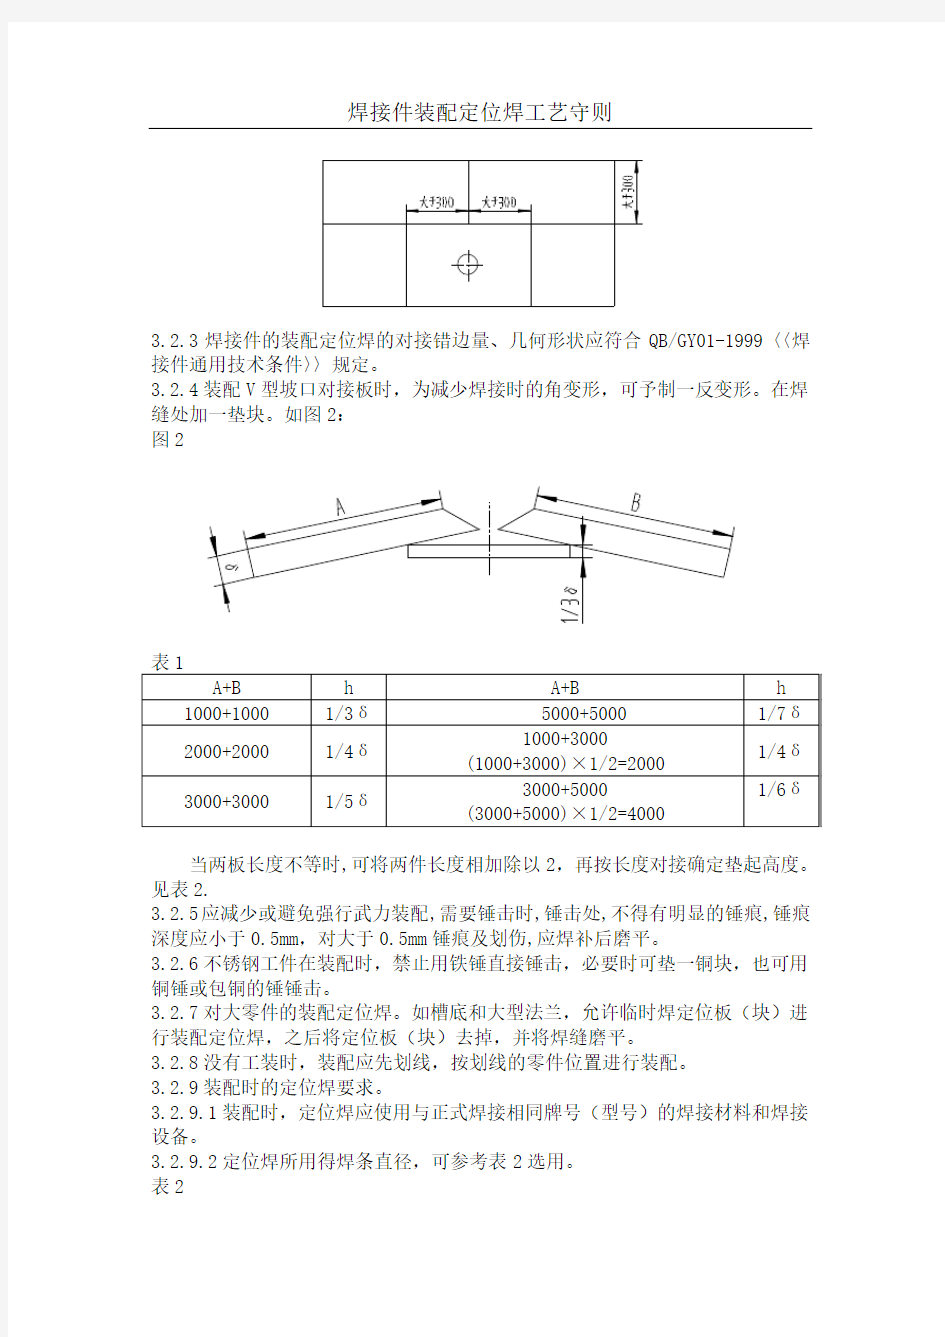 焊接件装配定位焊工艺守则